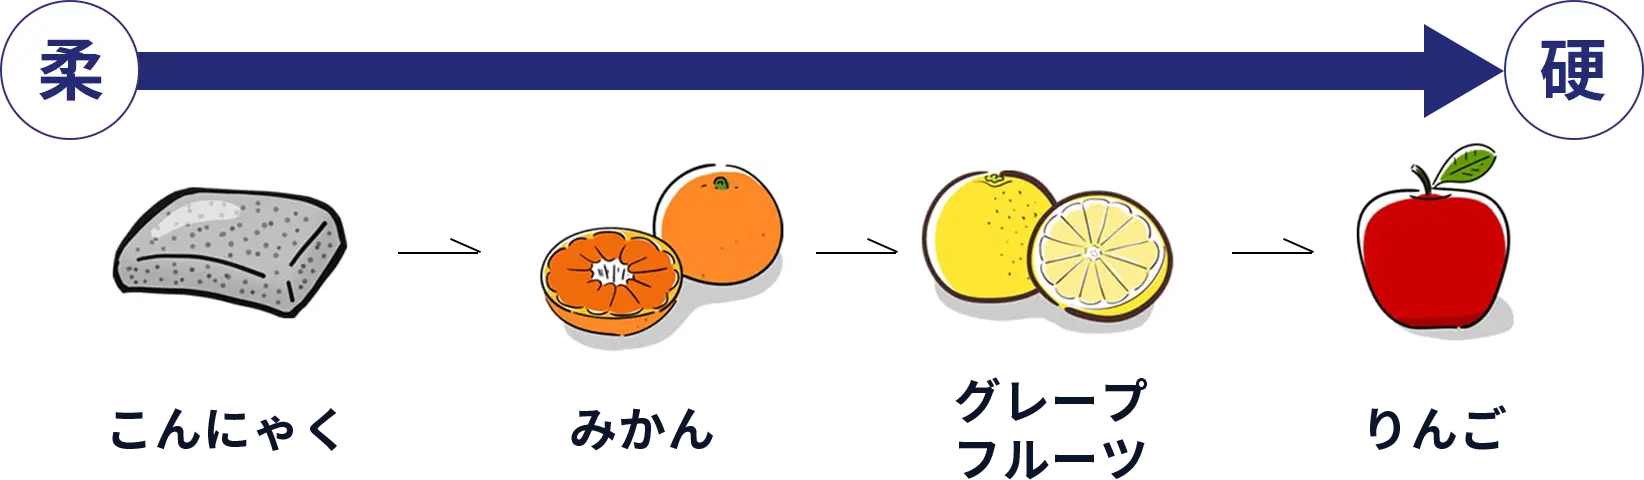 こんにゃく→みかん→グレープフルーツ→りんご